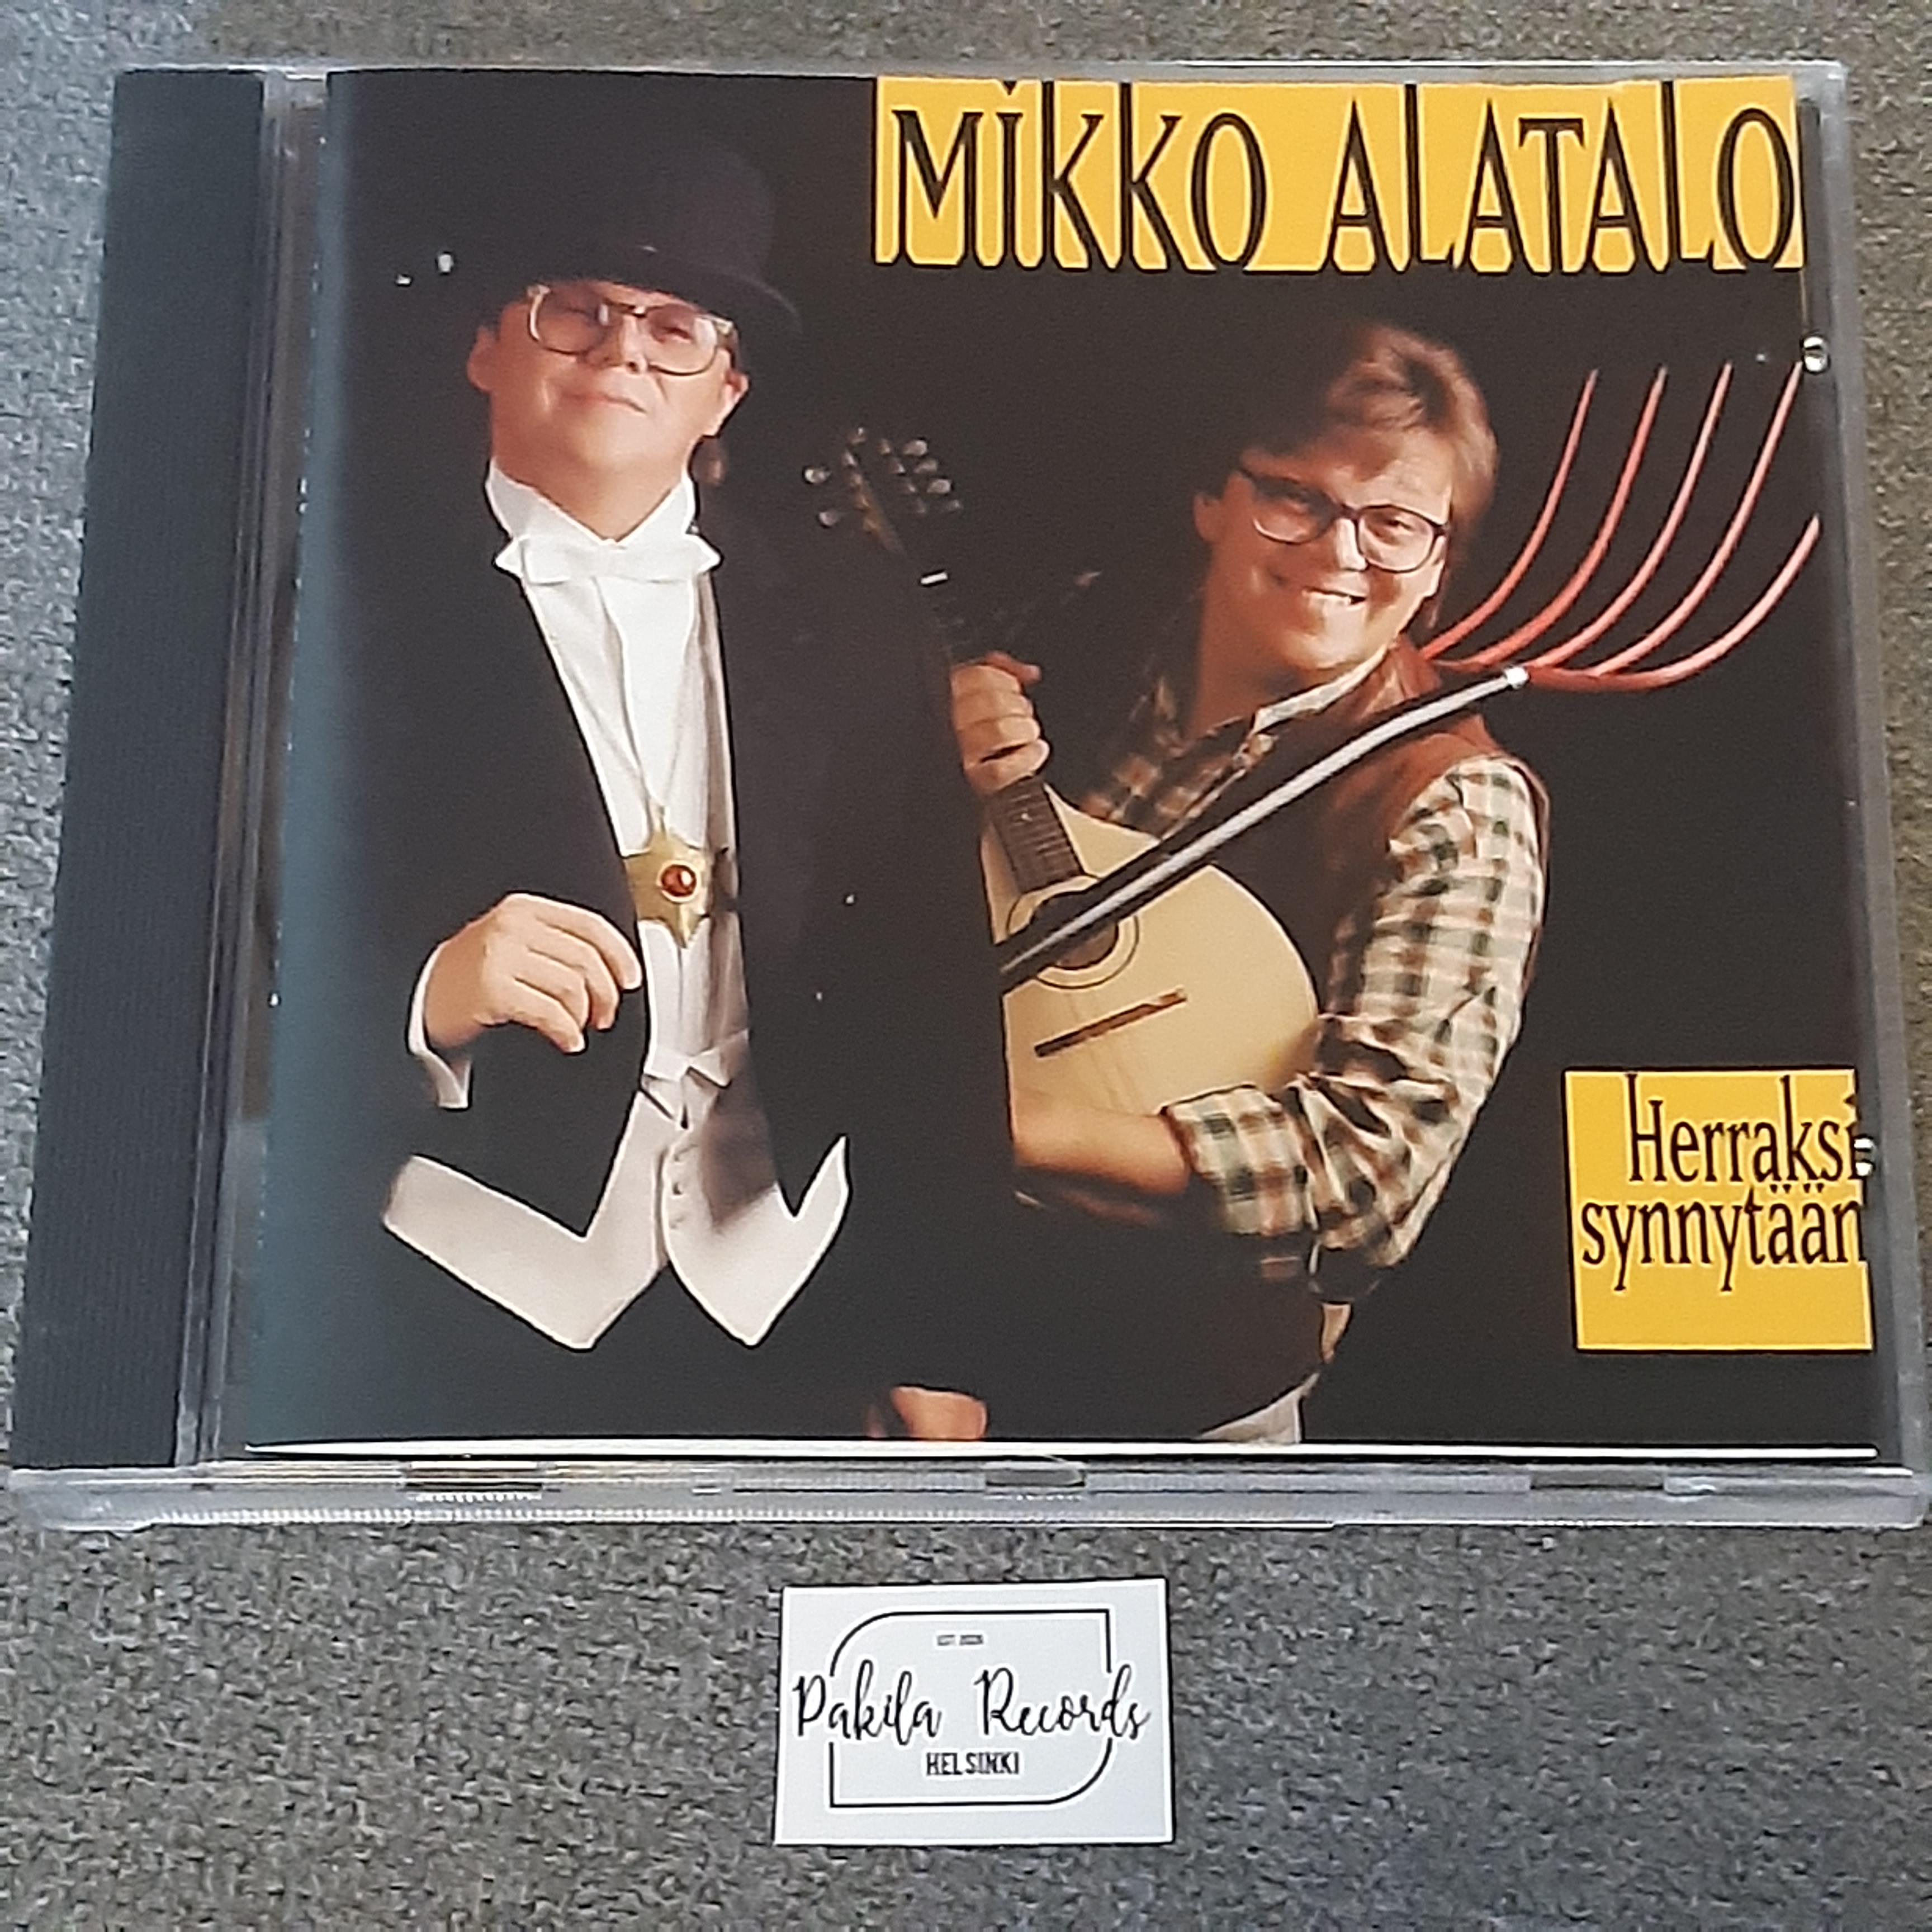 Mikko Alatalo - Herraksi synnytään - CD (käytetty)